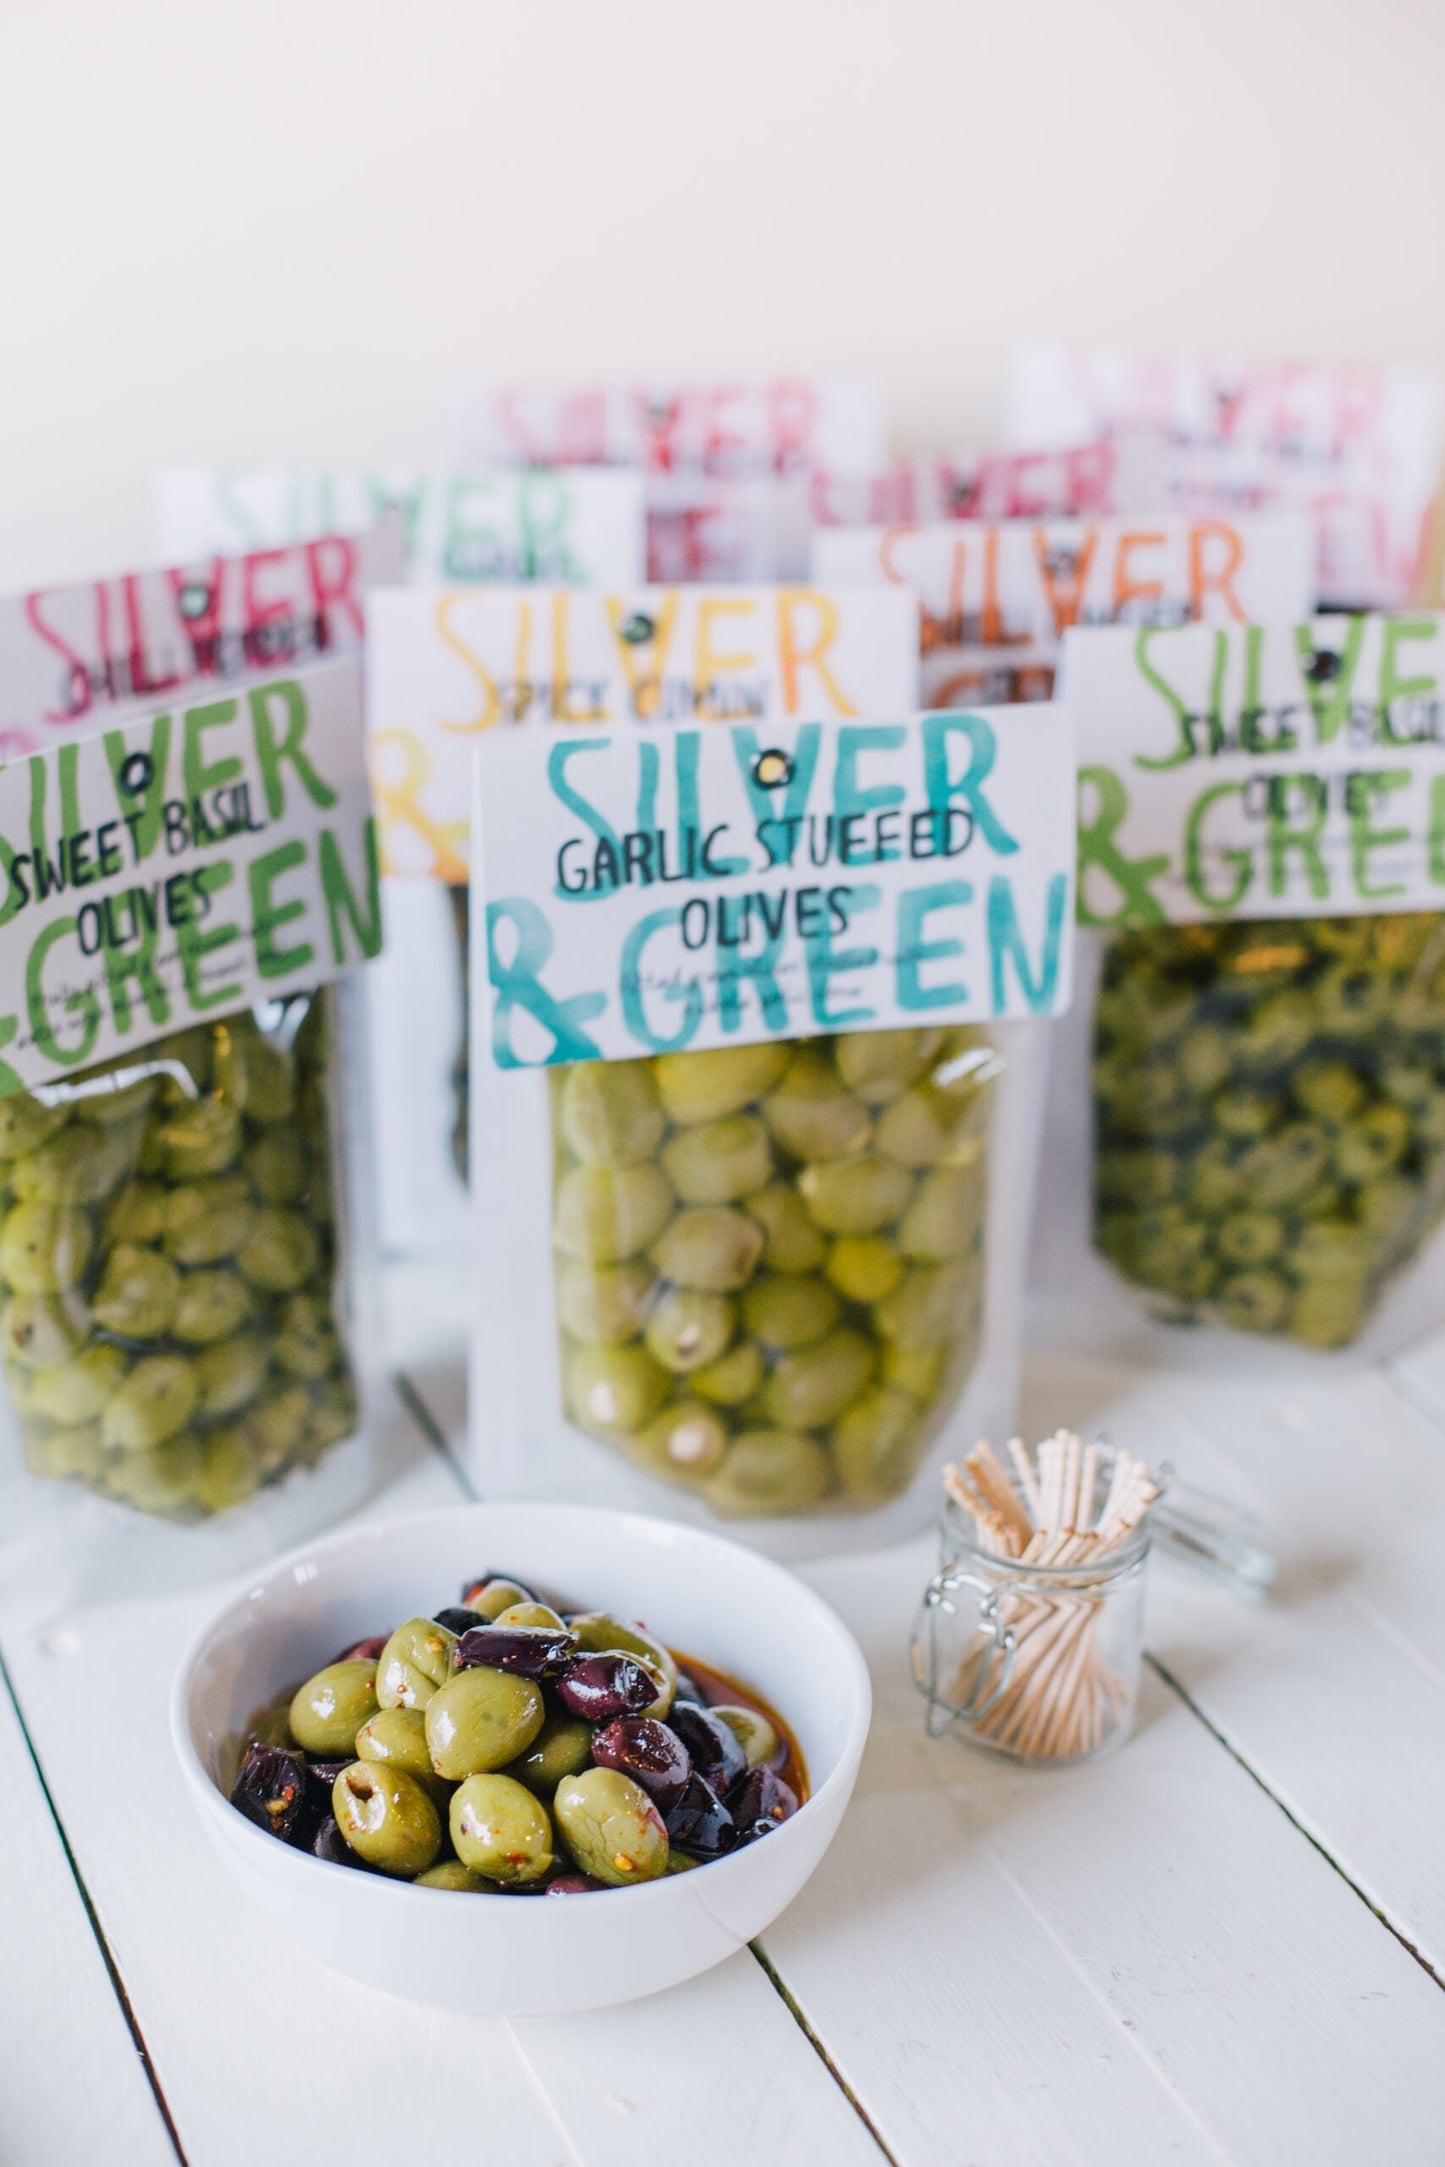 Silver & Green | Pitted Kalamata Olives (220g)